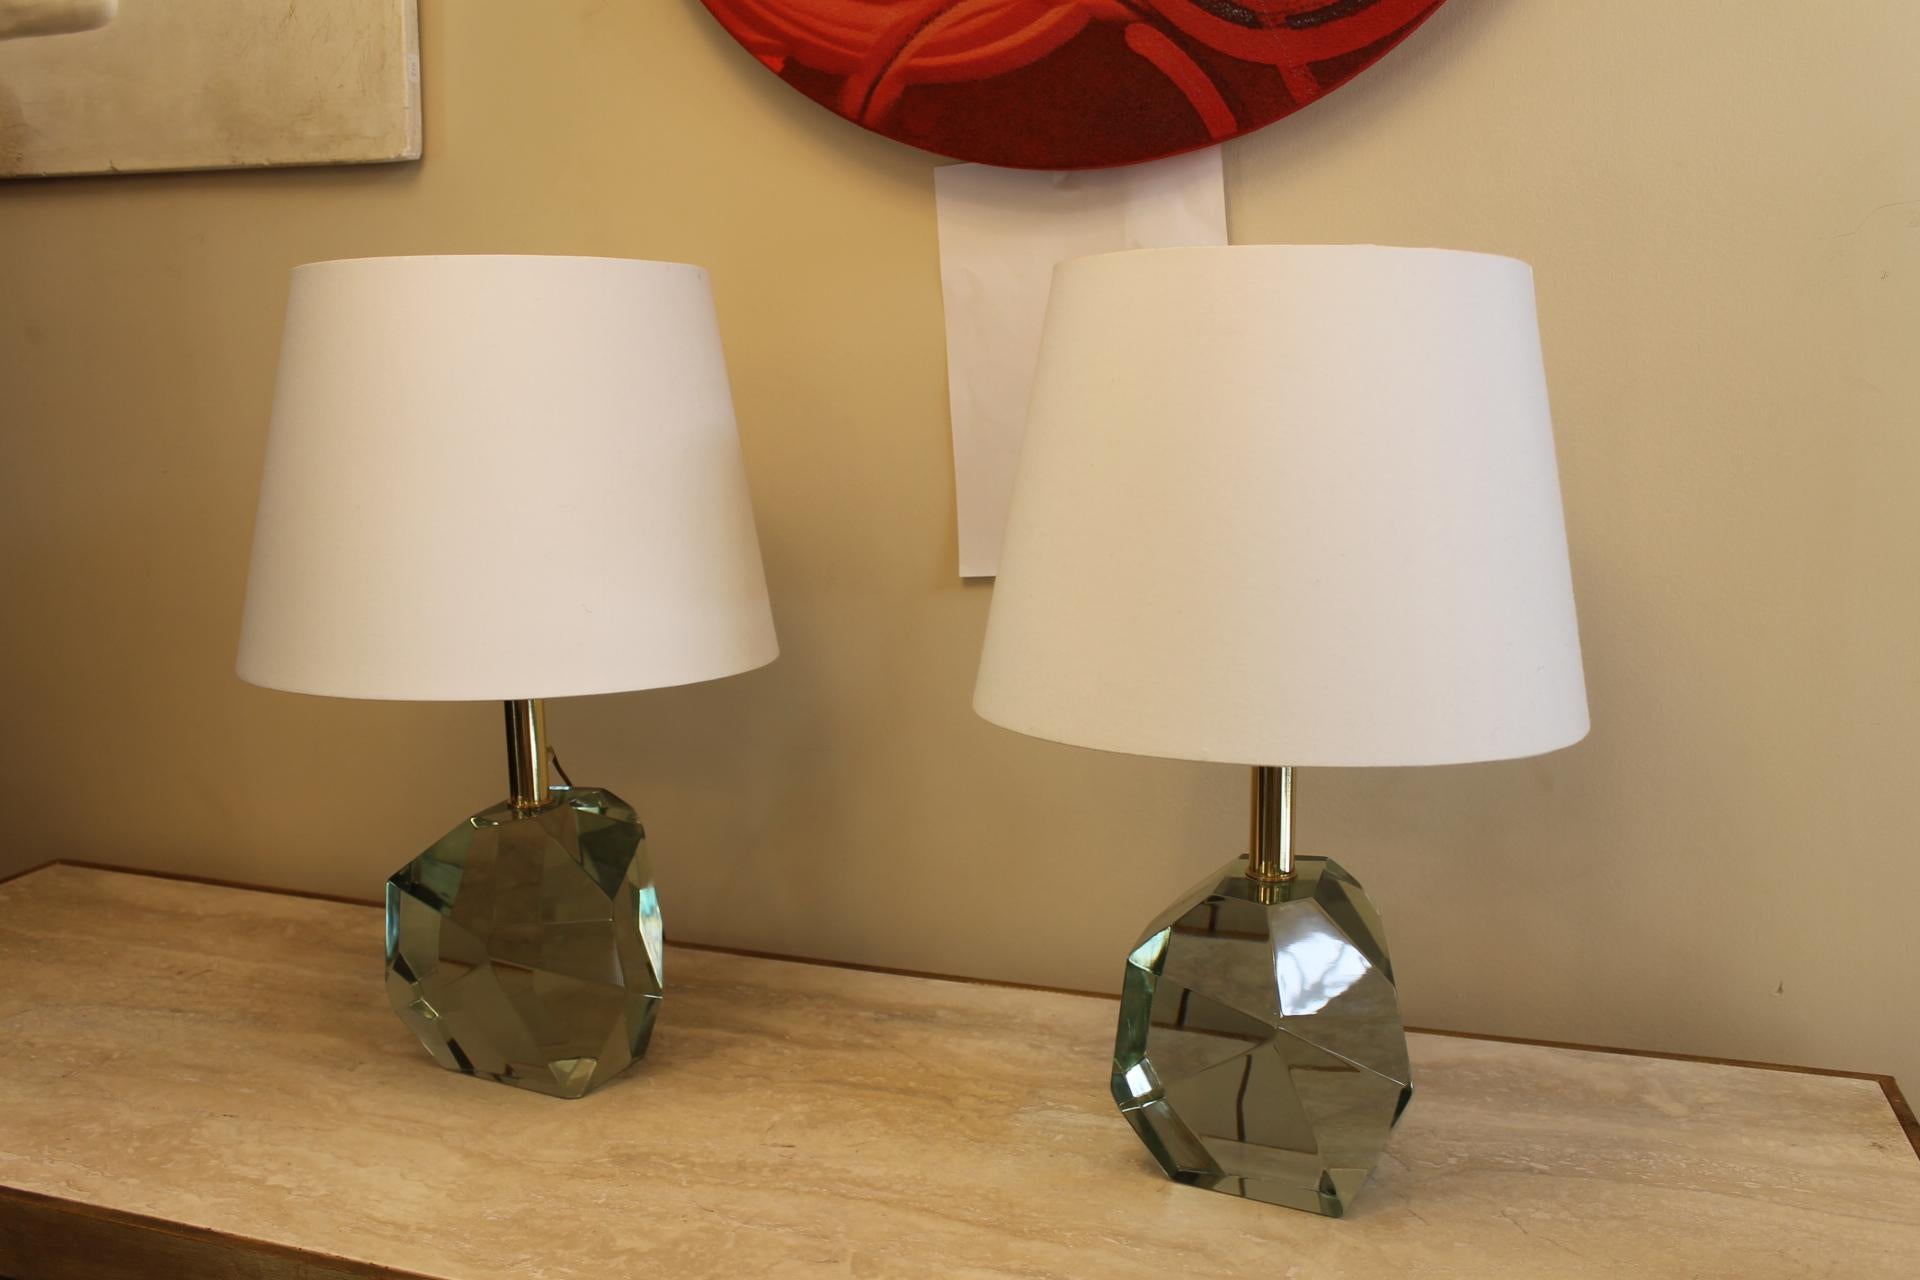 Paire de lampes en verre de Murano, couleur émeraude, semblable à des galets. Elles sont montées dans des lampes avec un abat-jour blanc. Ampoule à culot E 27.
Paire de lampes très élégantes.L'originalité est le verre qui est taillé comme un